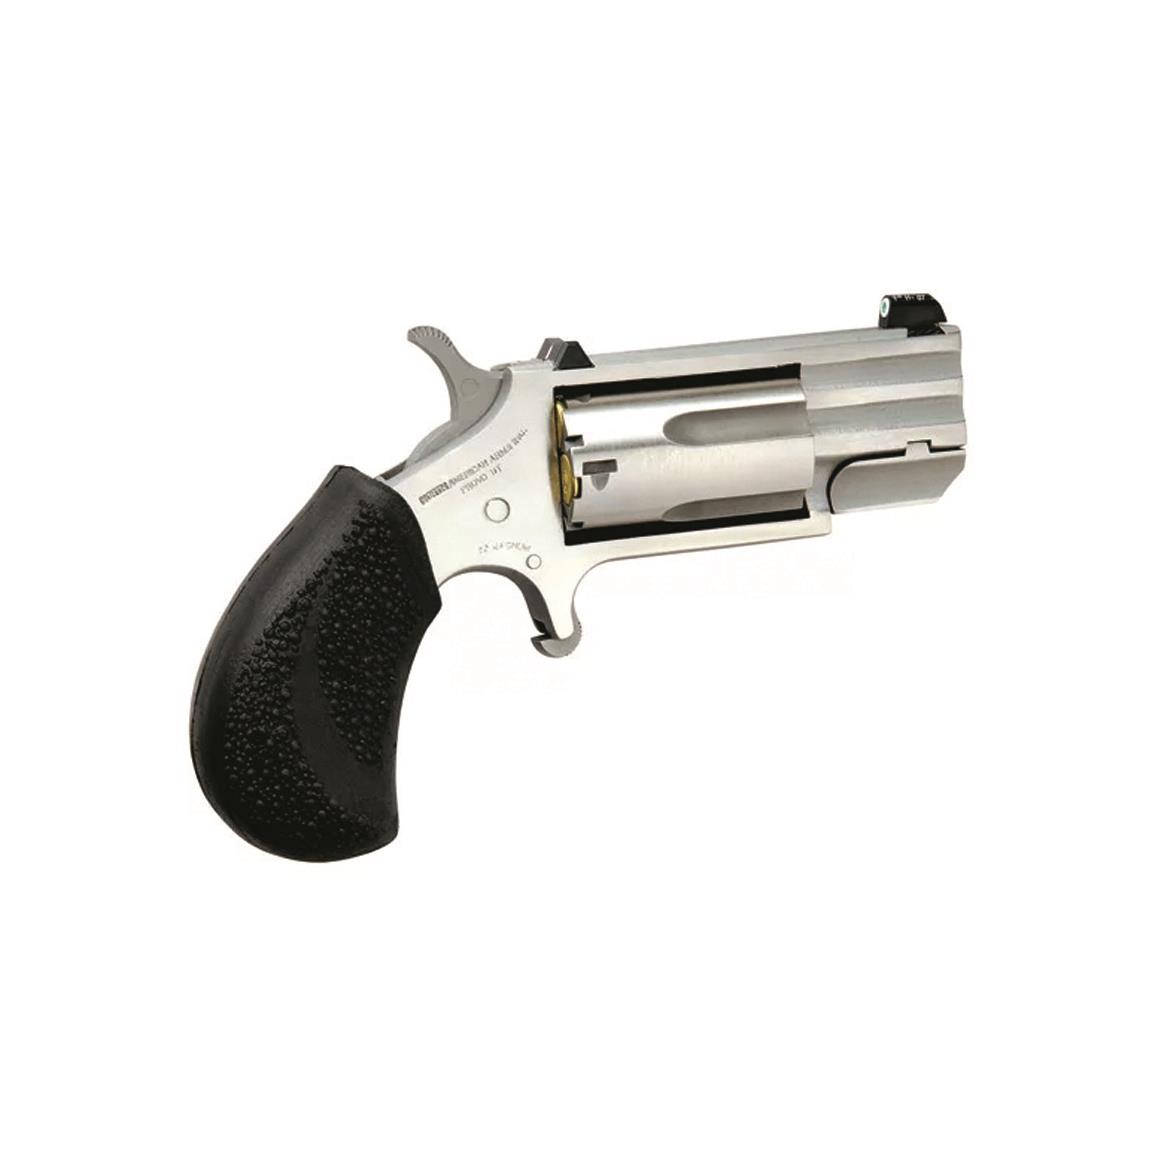 NAA .22 Magnum Pug, Revolver, 1" Barrel, XS Tritium Front Sight, 5 Rounds